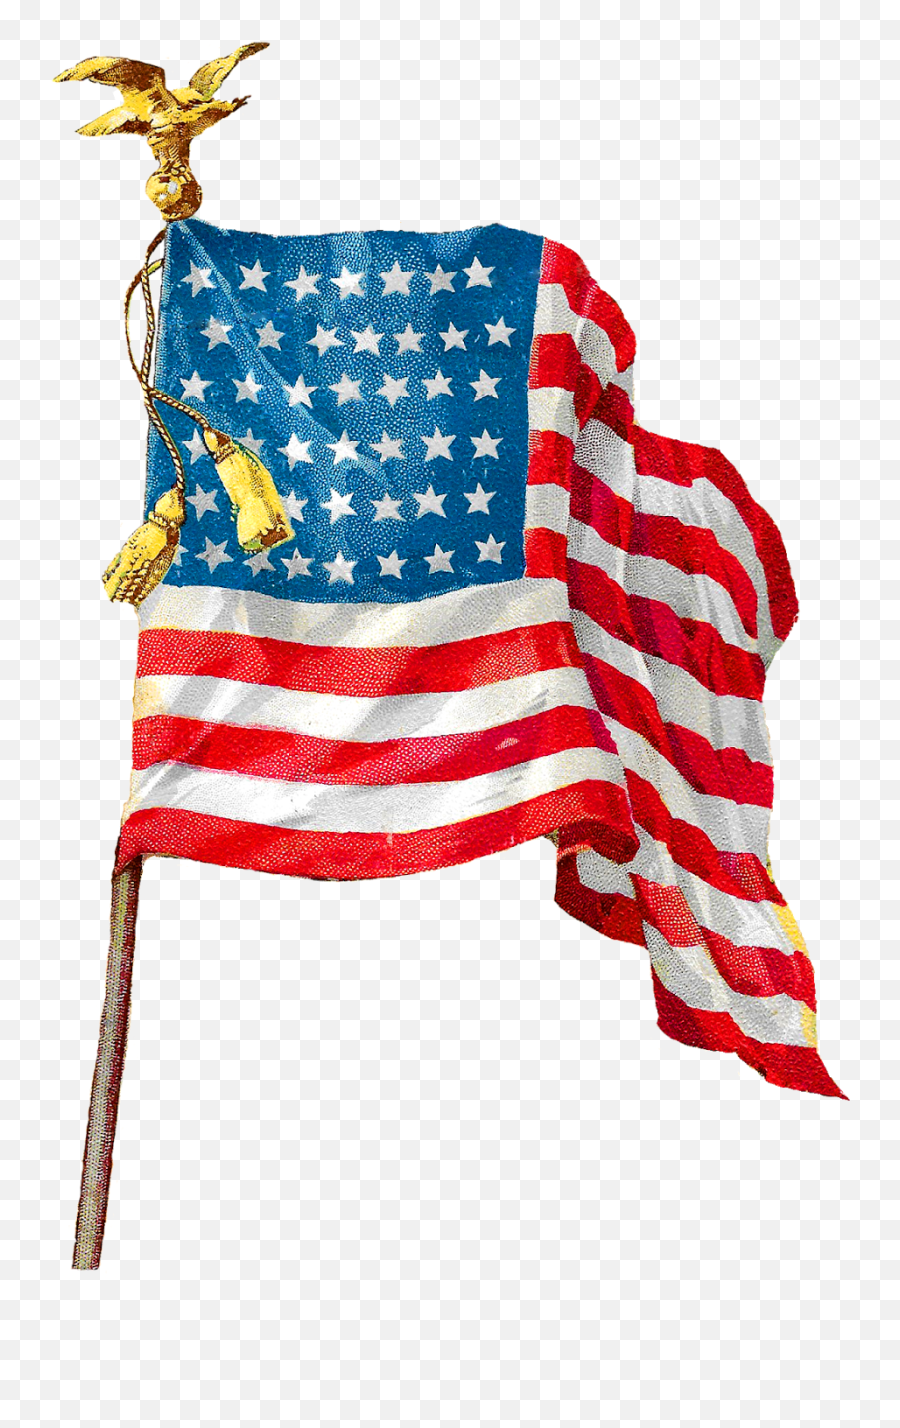 Vintage American Flag Image Clip Art - Vintage America Flag Png,American Flag Clipart Transparent